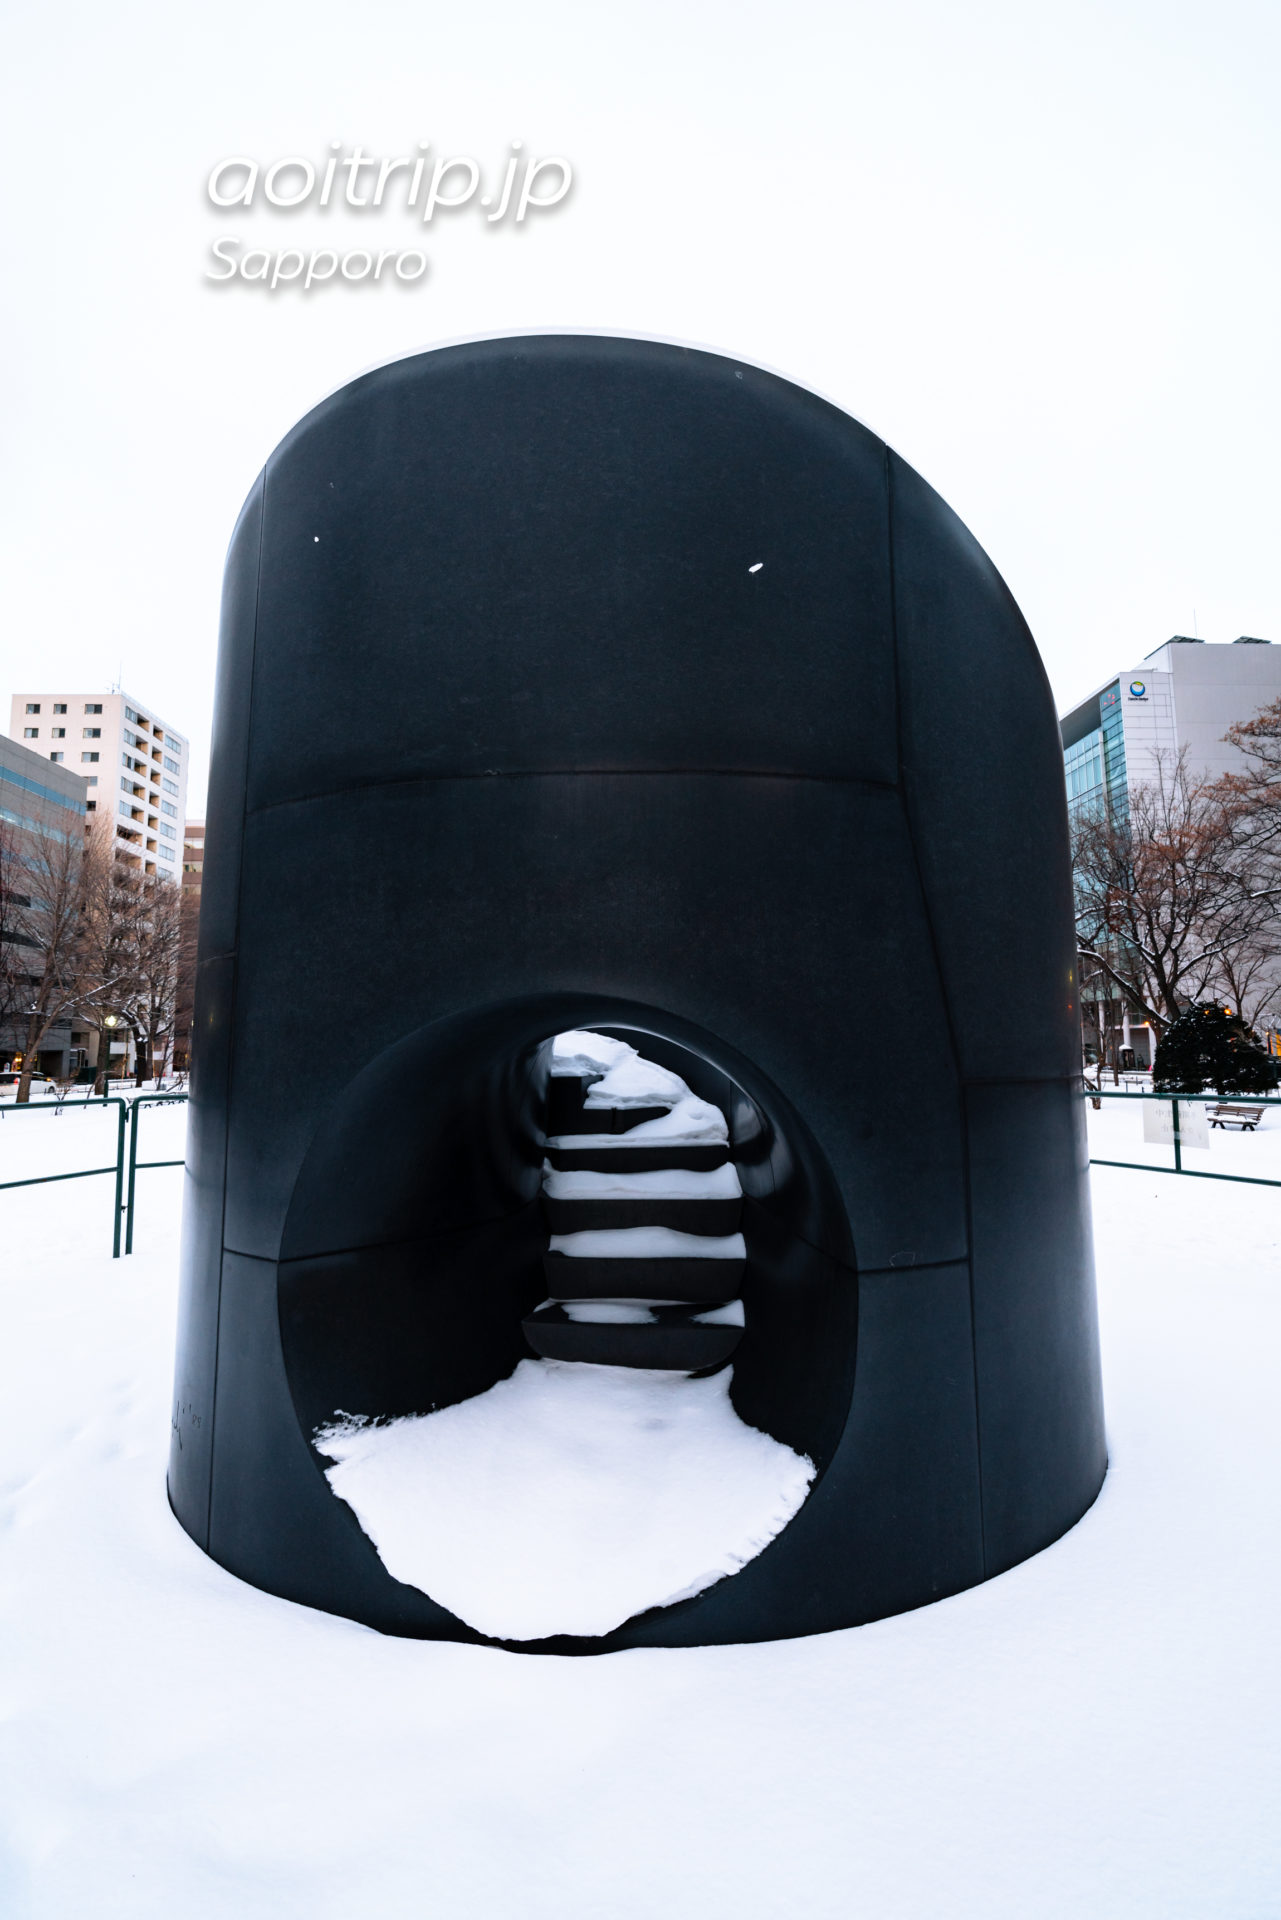 札幌大通公園のブラック スライド マントラ Black Slide Mantra, Sapporo, Hokkaido